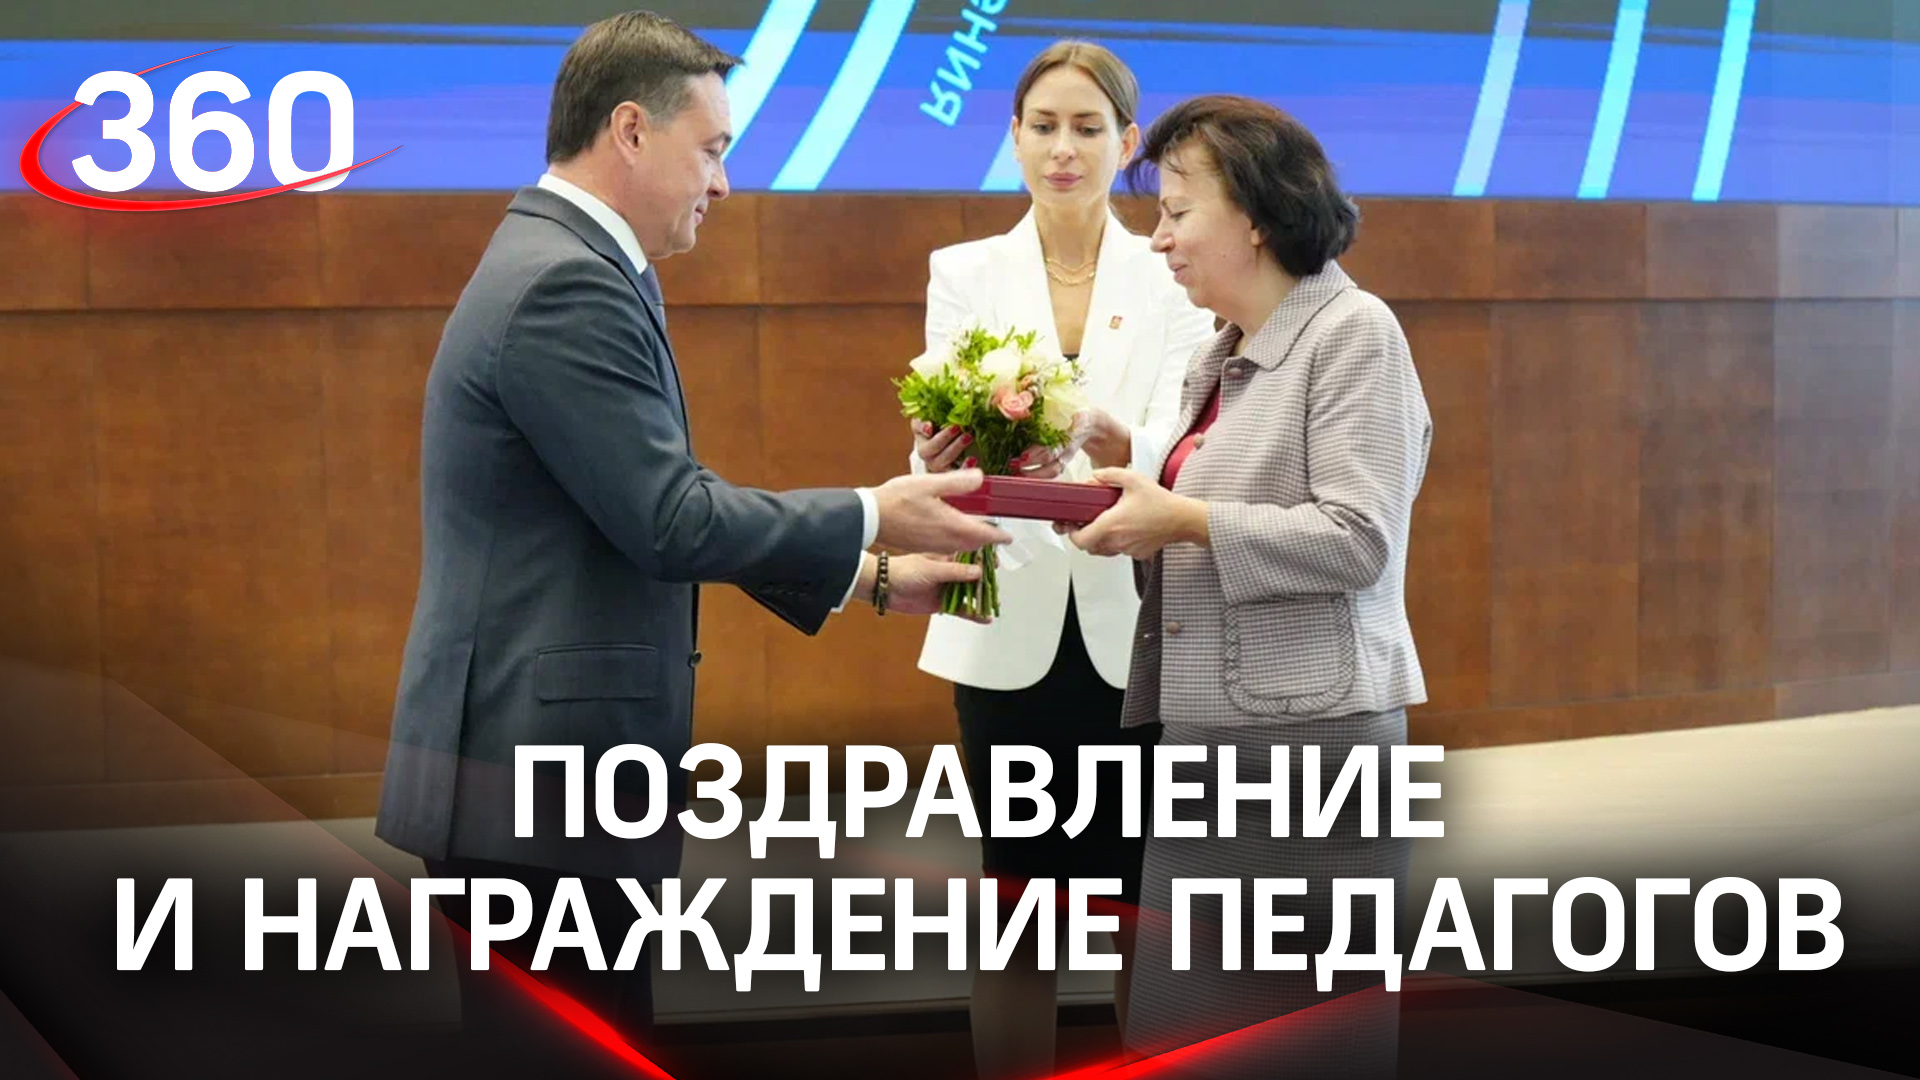 День учителя в Подмосковье: губернатор А. Ю. Воробьёв поздравляет и награждает педагогов